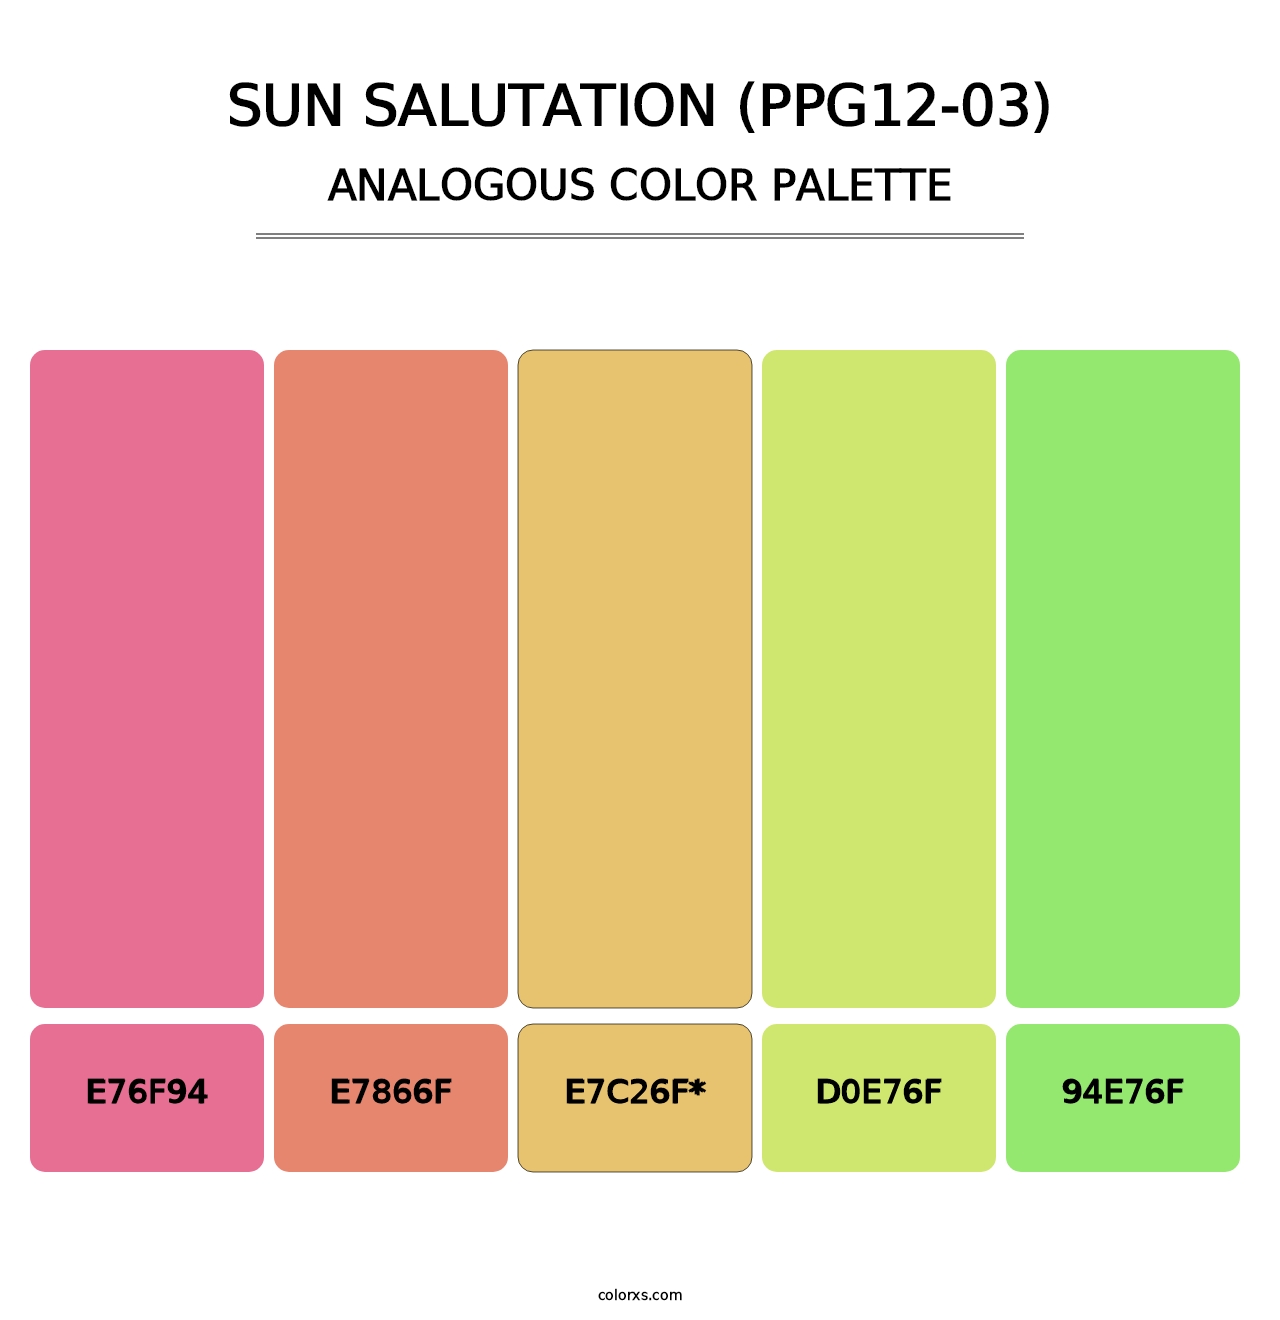 Sun Salutation (PPG12-03) - Analogous Color Palette